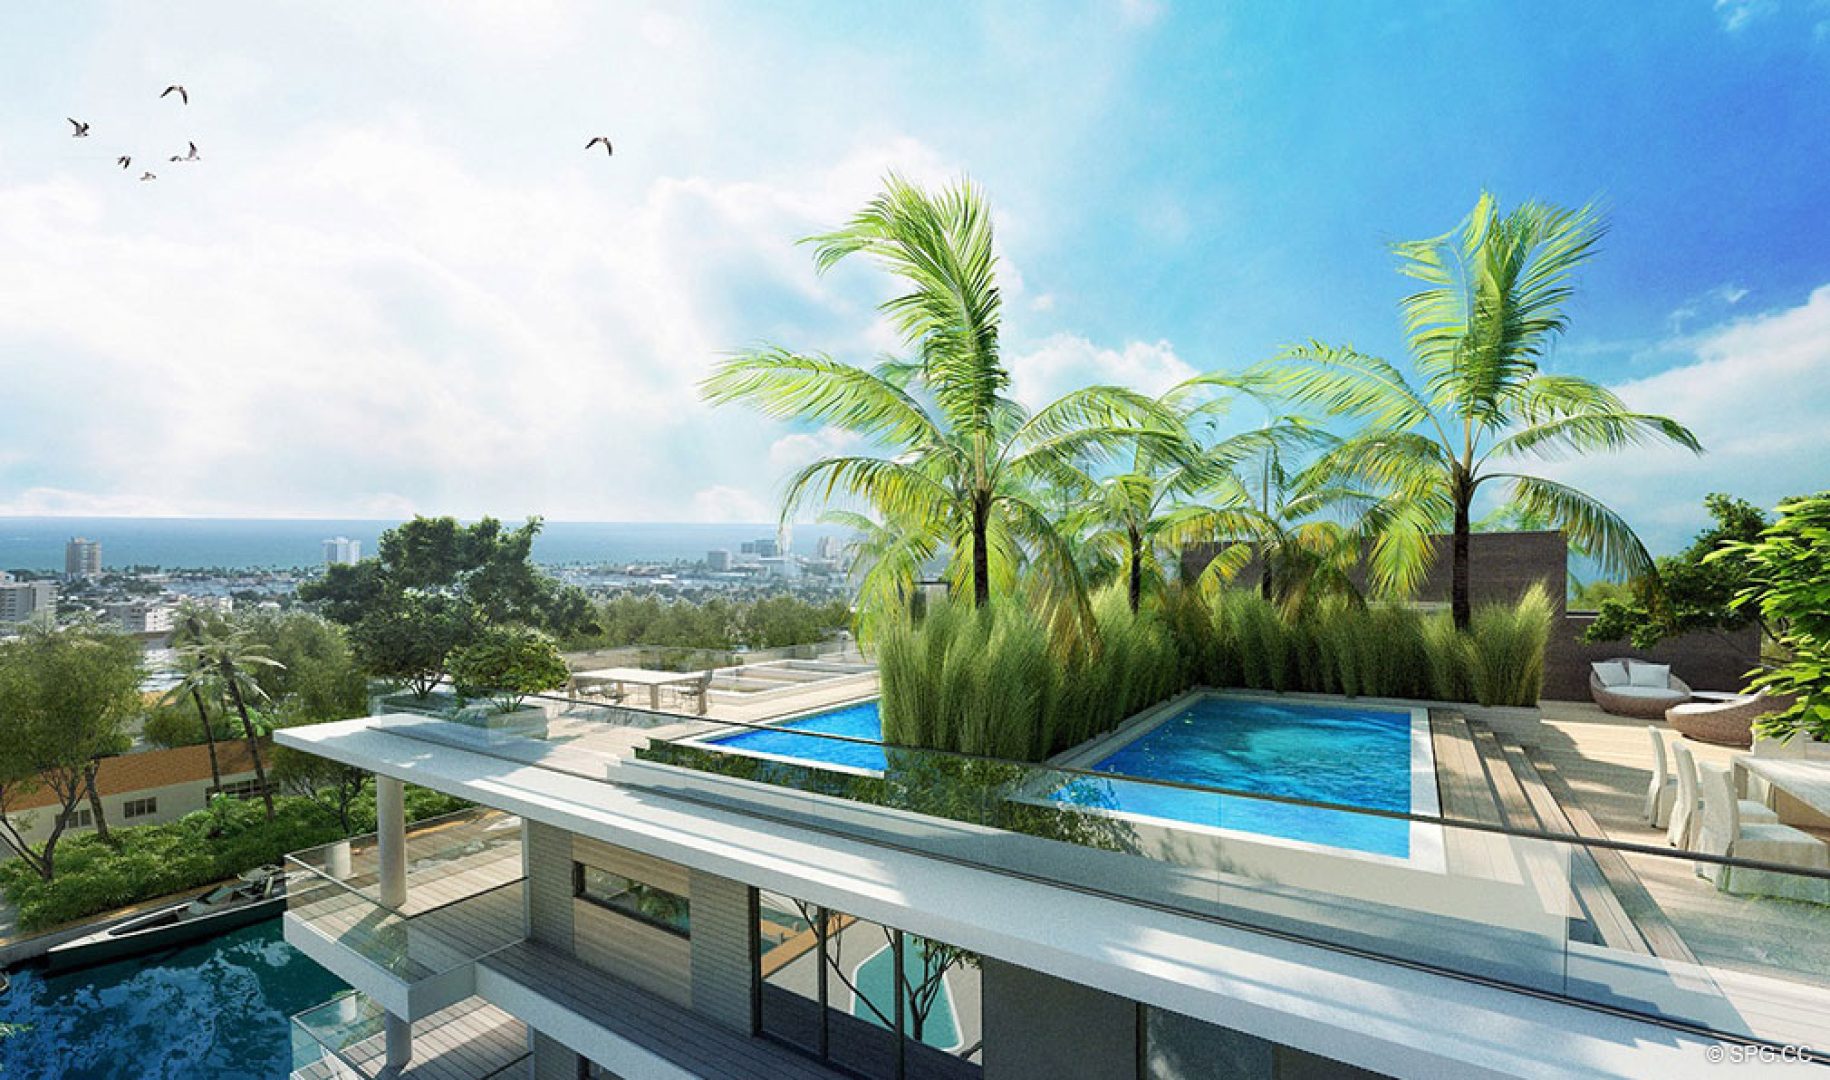 Rooftop Pools at AquaLuna Las Olas, Luxury Waterfront Condos in Fort Lauderdale, Florida 33301